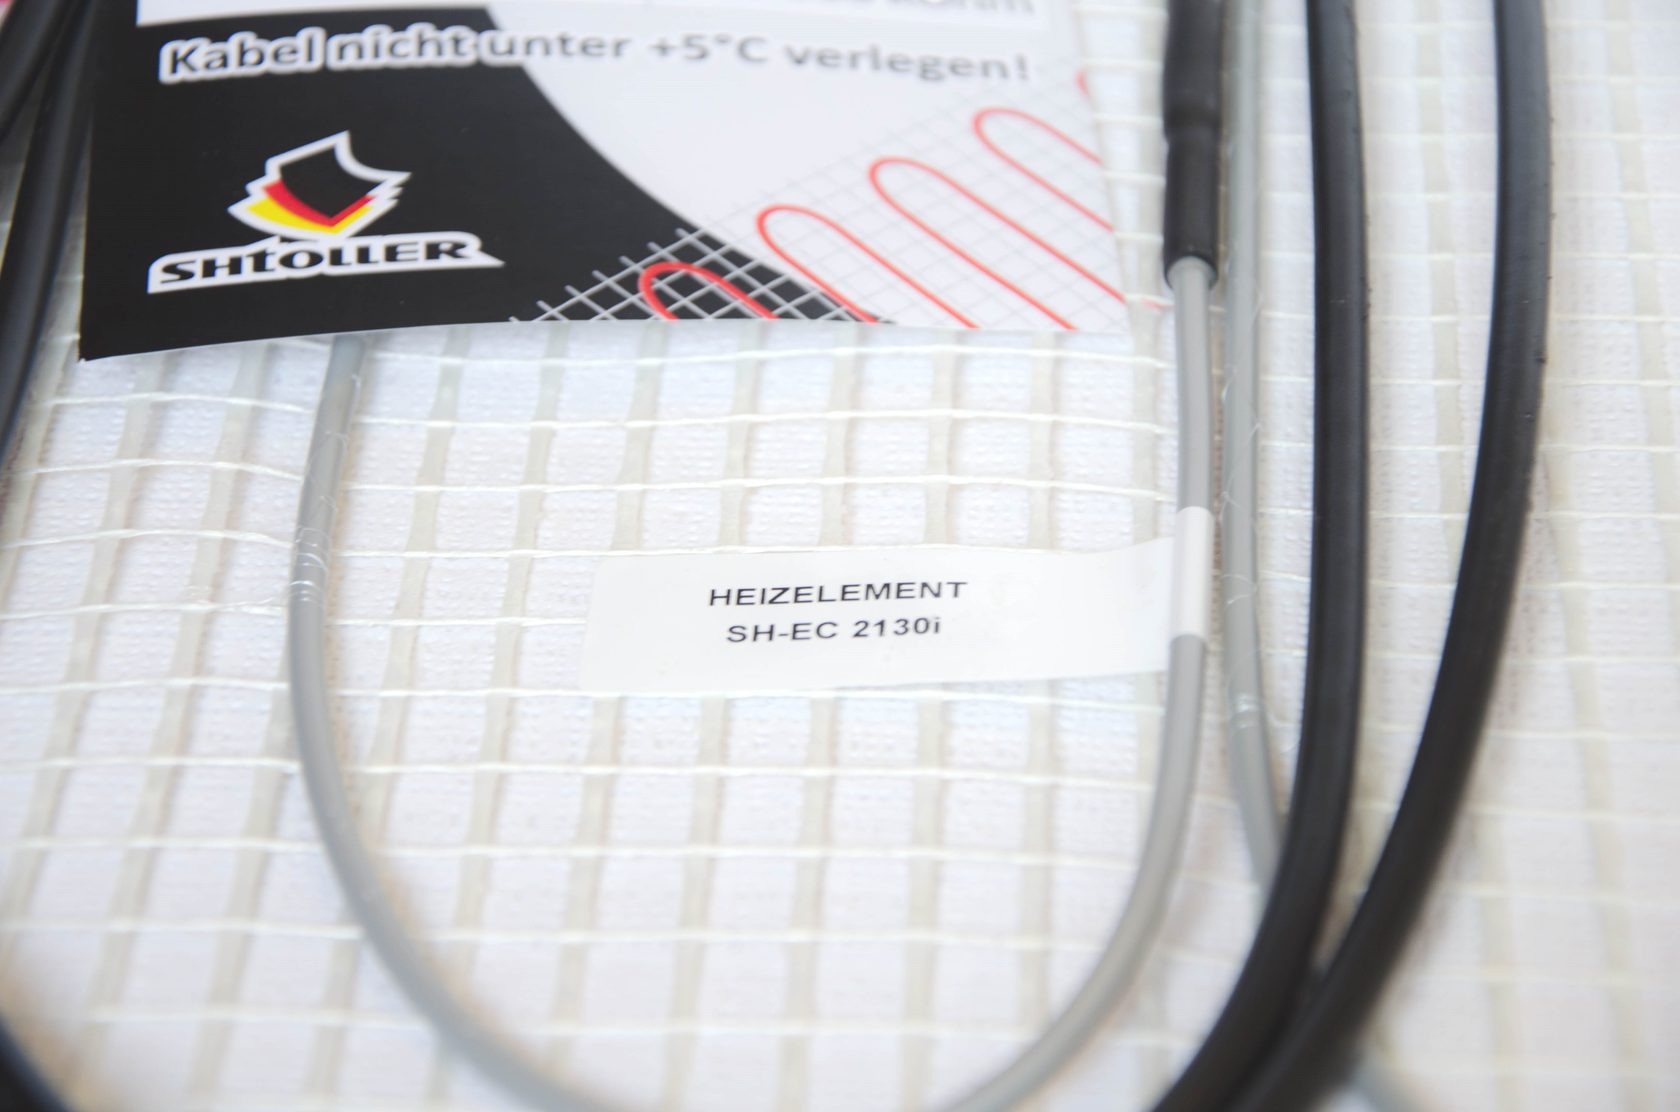 Електрична тепла підлога Shtoller SH-EC 21140i відгуки - зображення 5